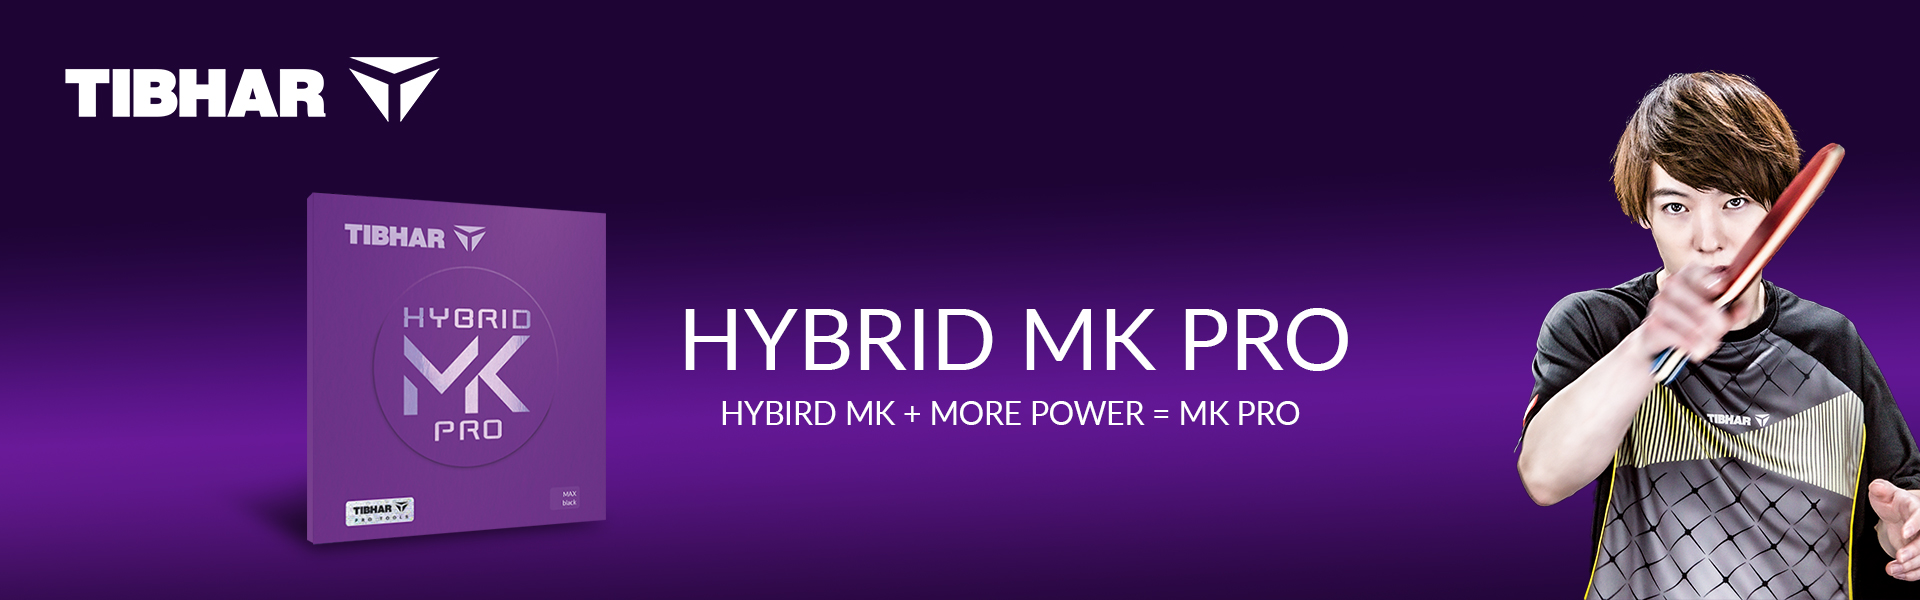 Hybrid_MK_Pro_V6